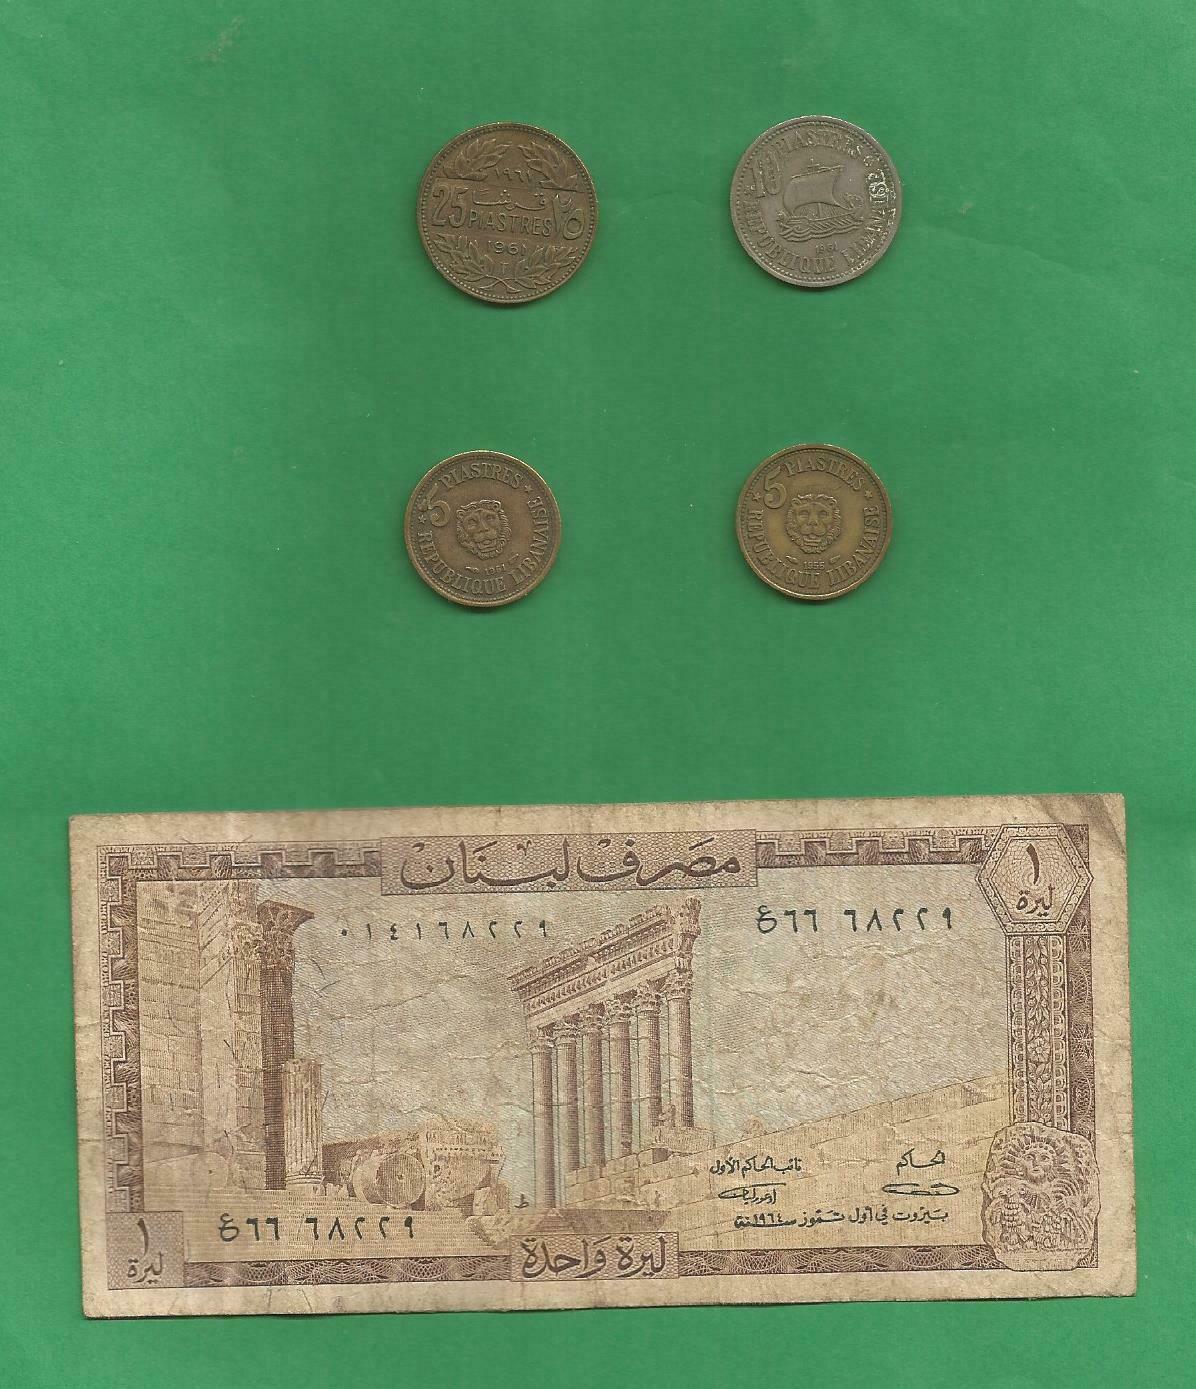 Lebanon - Une Livre Banknote Plus Four Coins (1955 X 2, 1961 X 2)